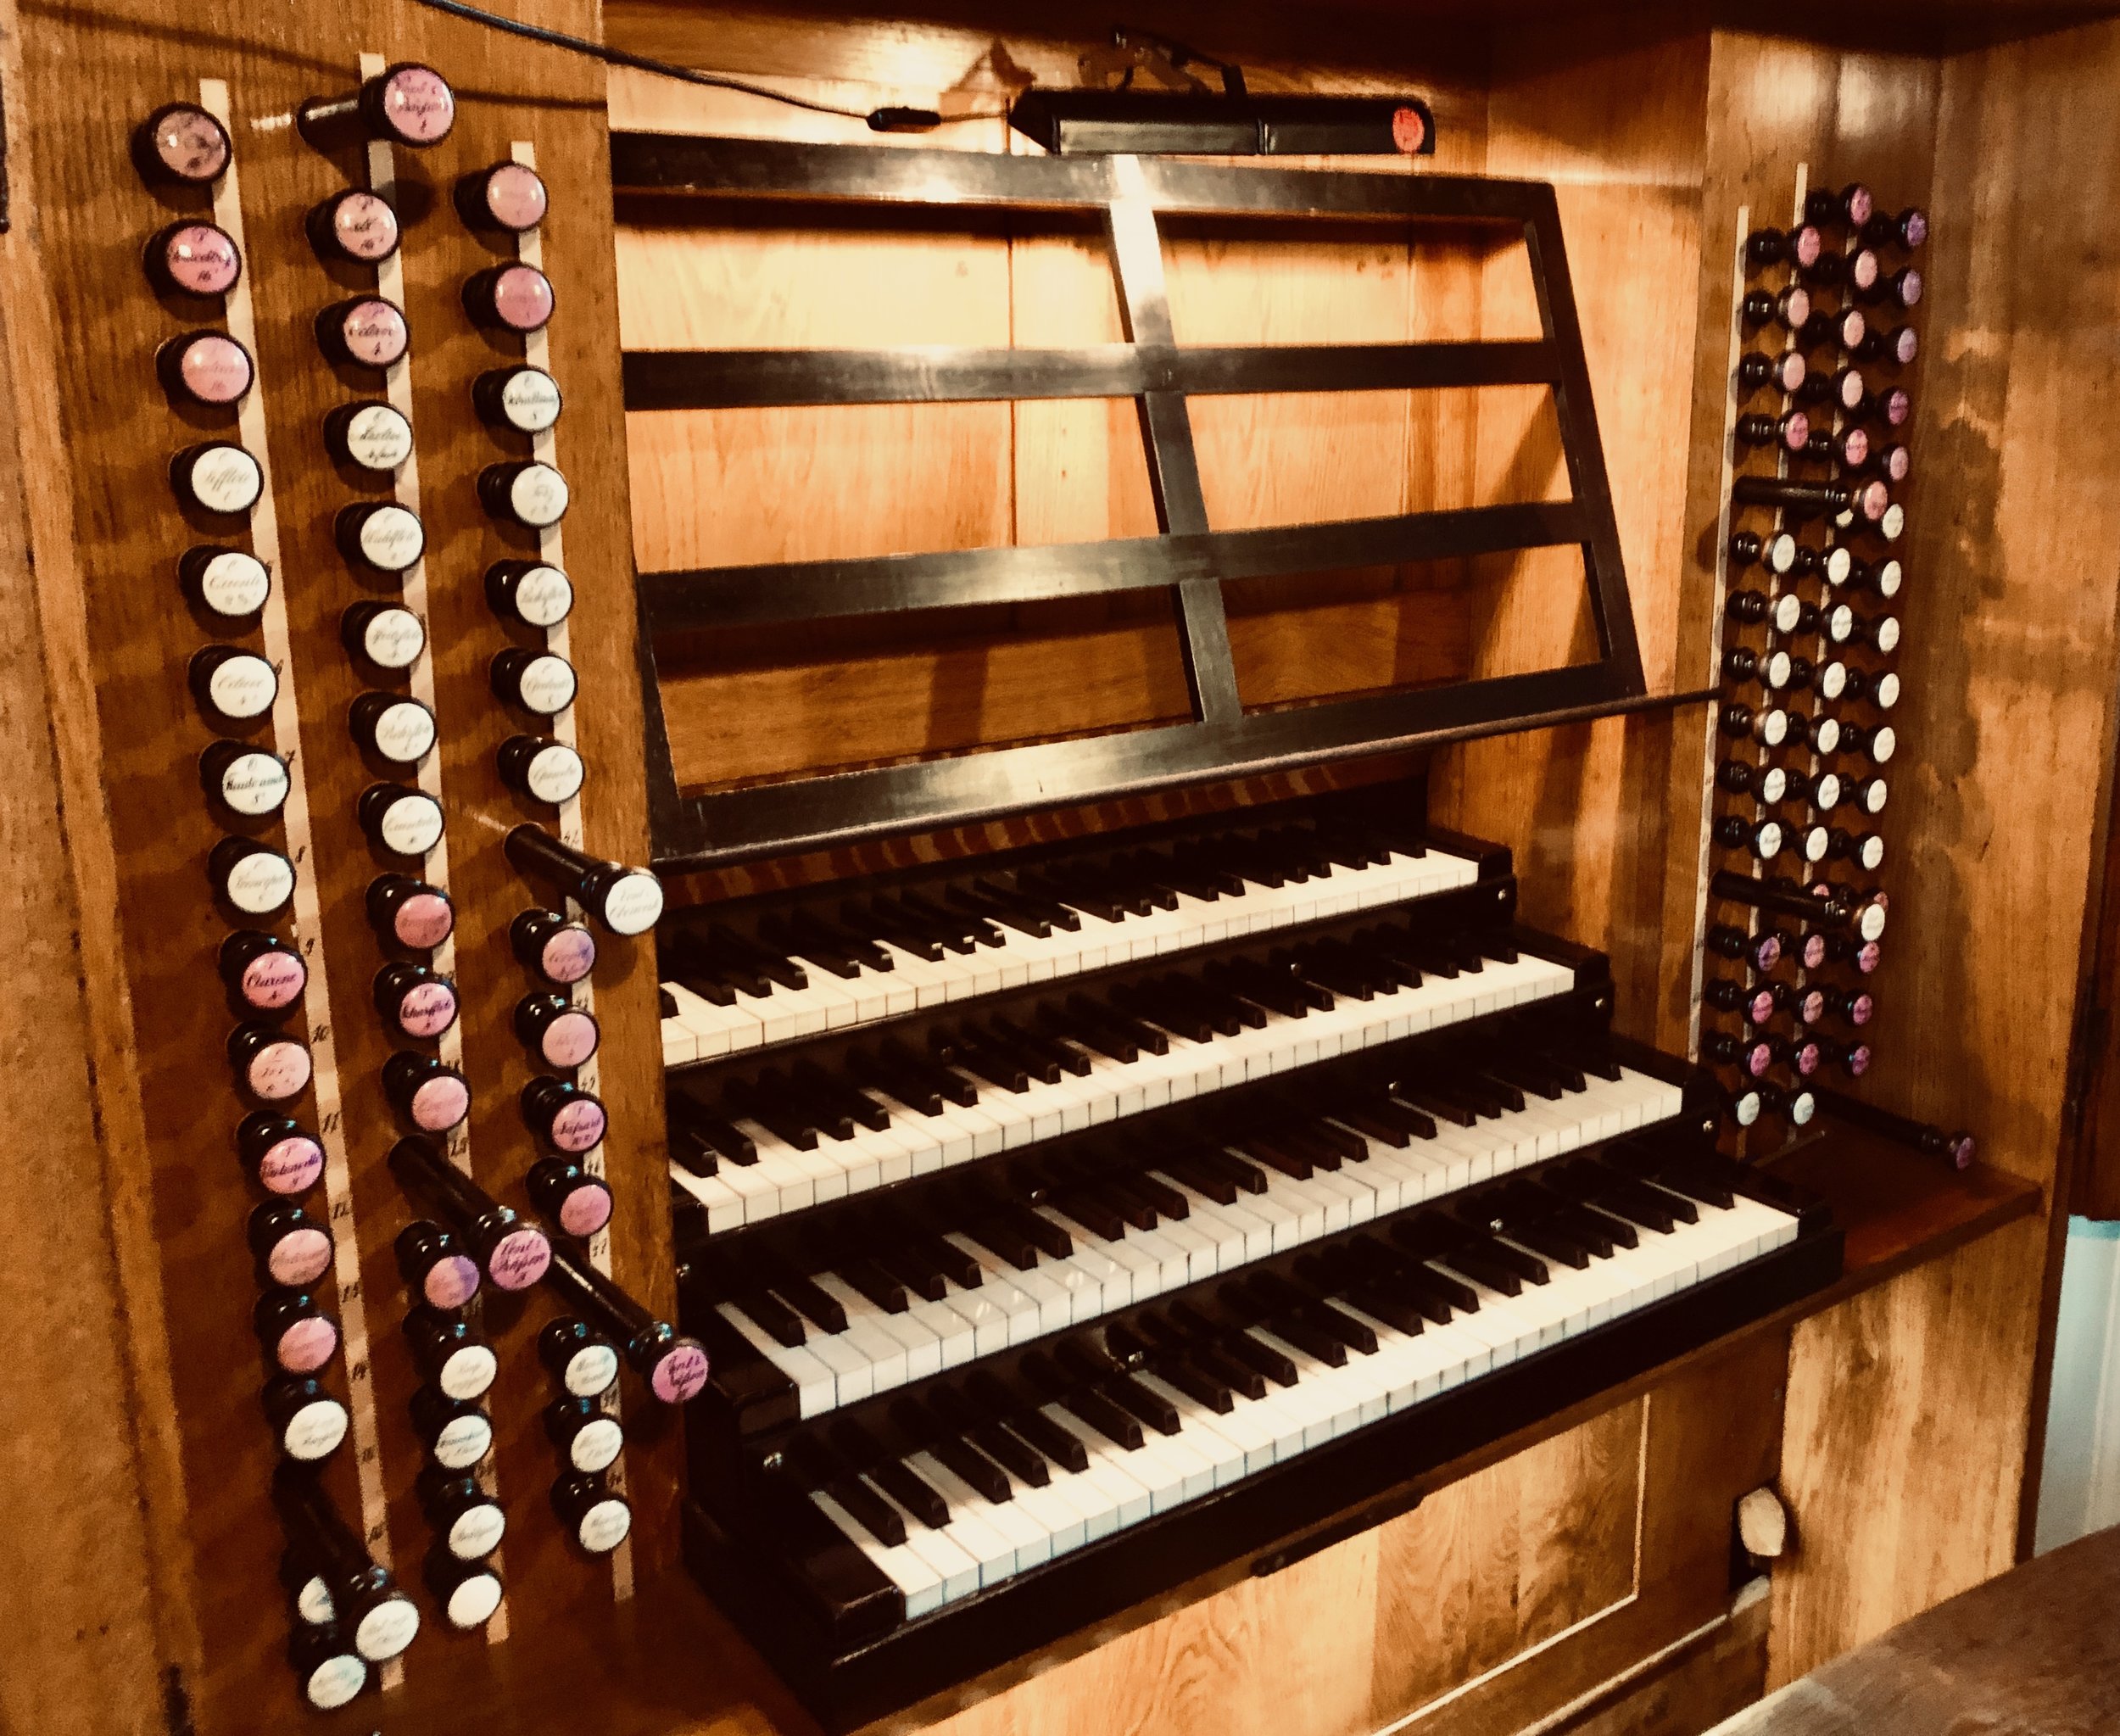  Console, 1855 Ladegast Organ, Merseburg Dom. 